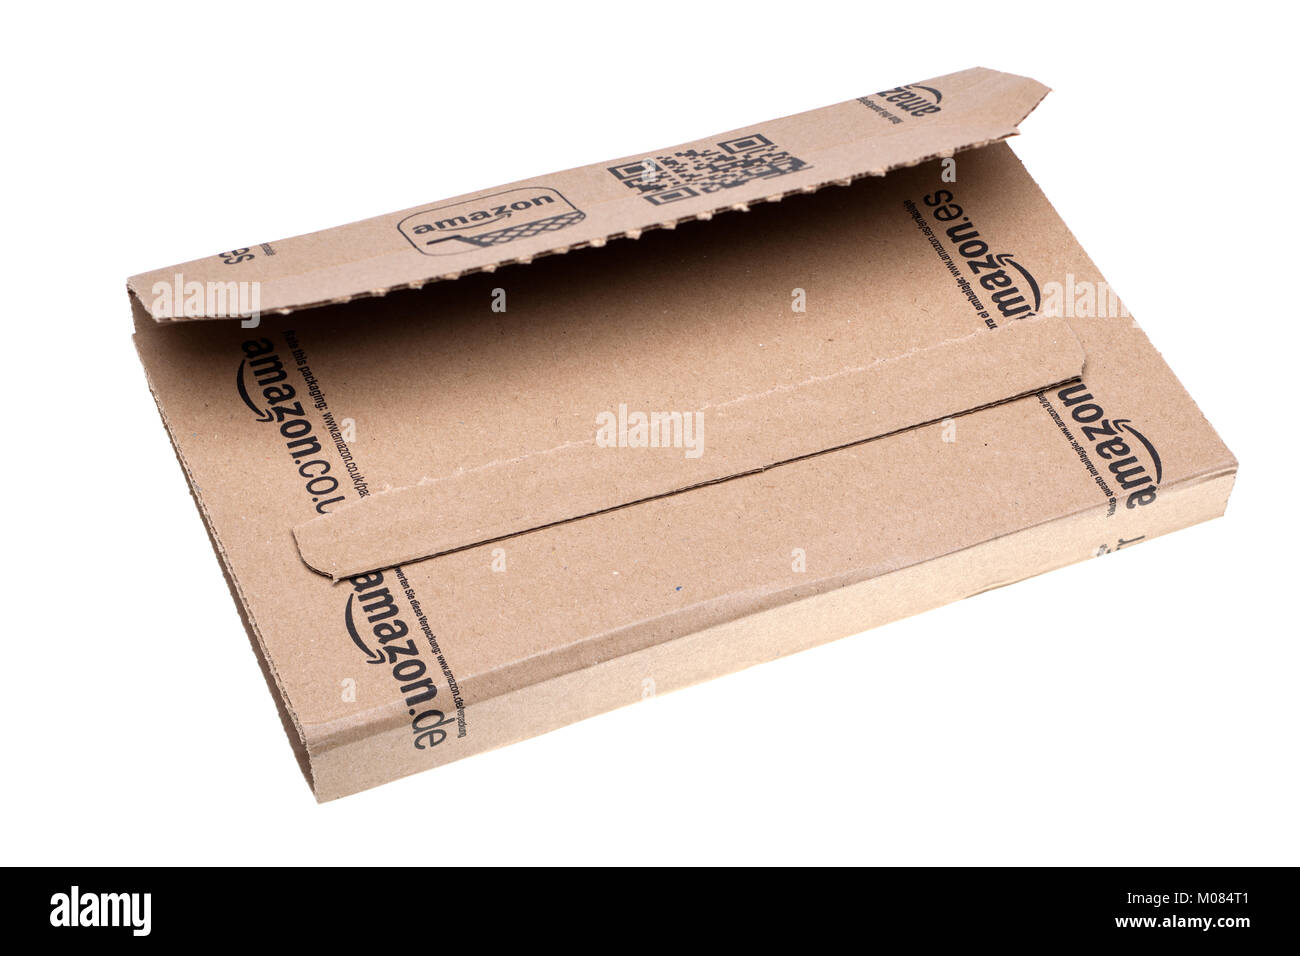 Amazon kleine Verpackung geöffnet Stockfoto